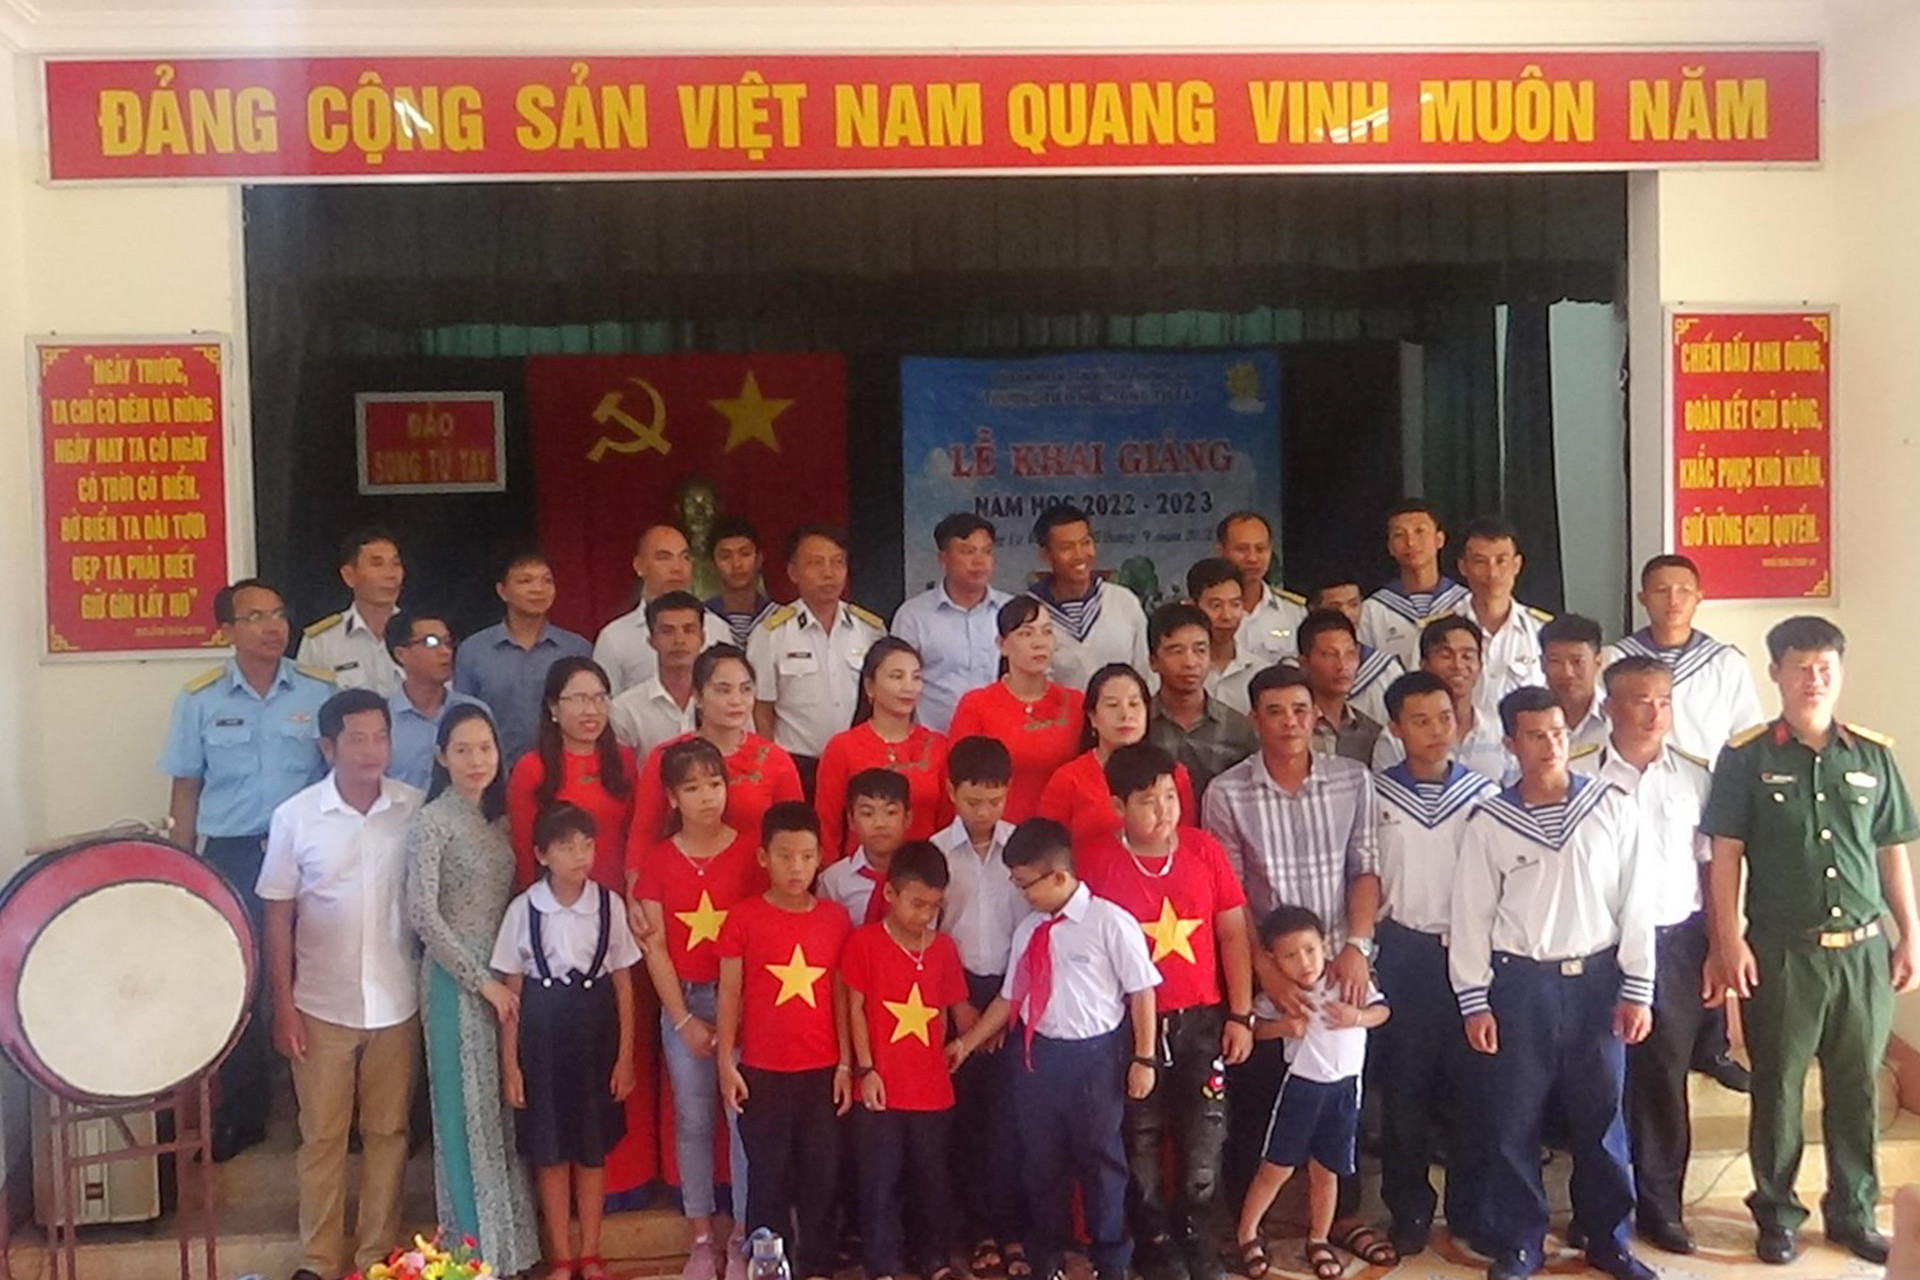 Chính quyền địa phương và các lực lượng công tác trên đảo Song Tử Tây chụp ảnh lưu niệm cùng thầy và trò Trường Tiểu học Song Tử Tây tại lễ khai giảng